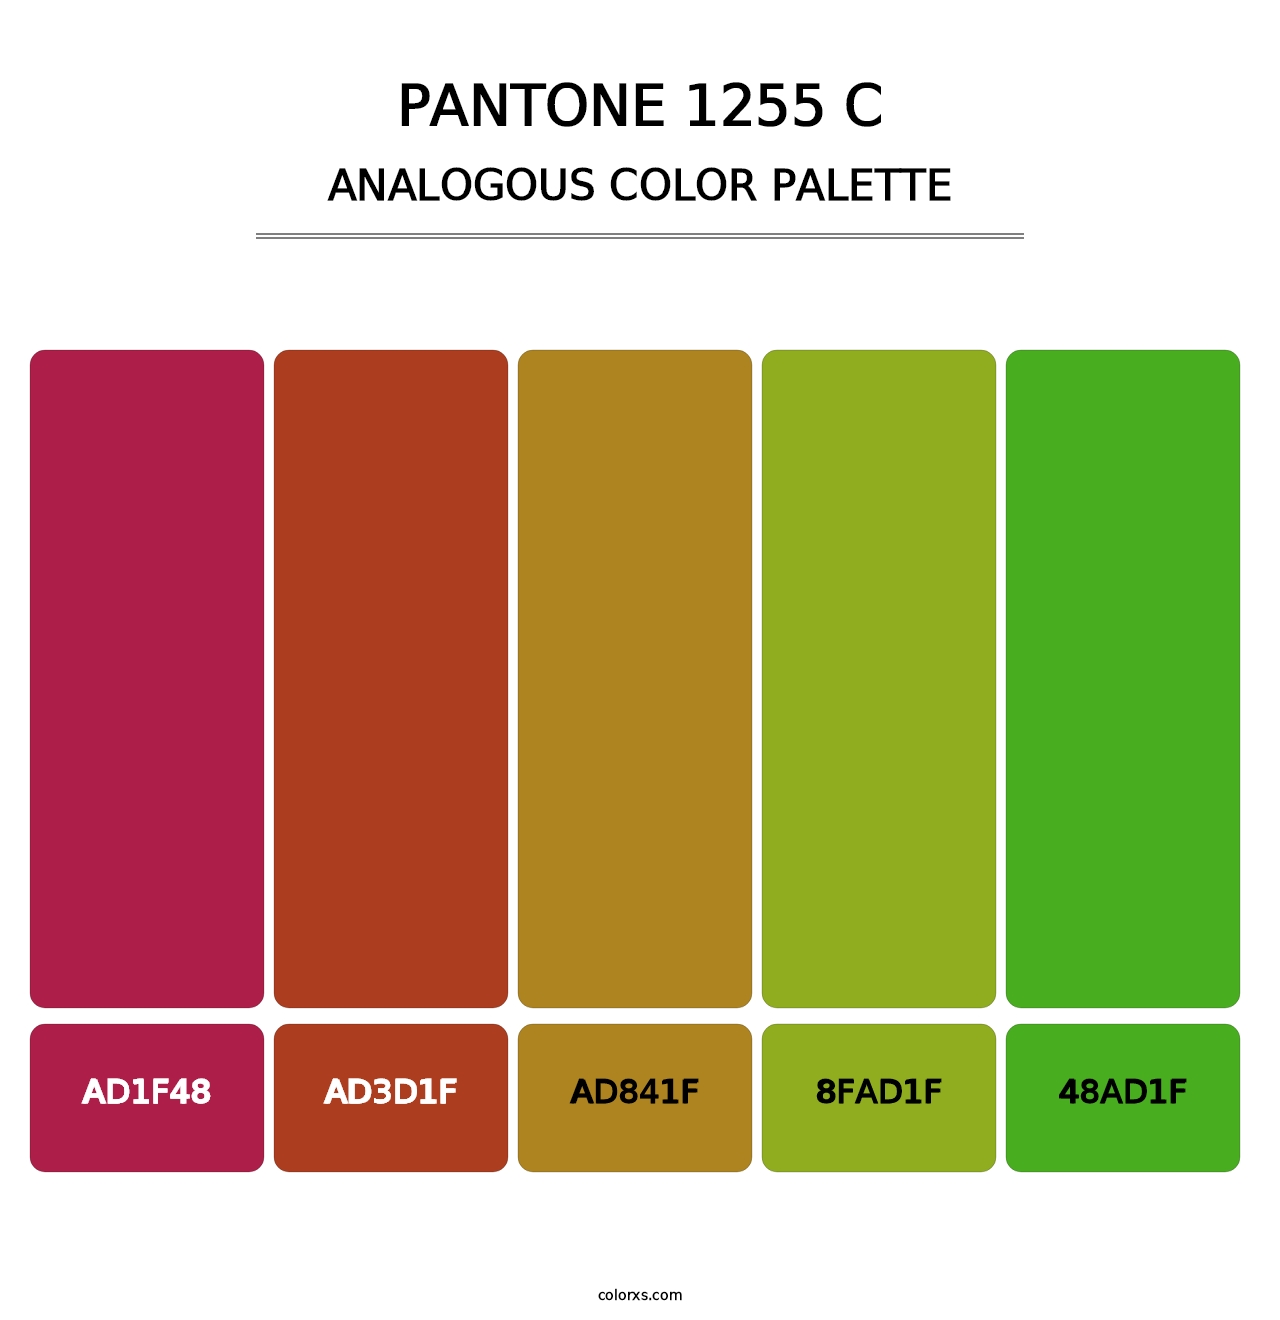 PANTONE 1255 C - Analogous Color Palette